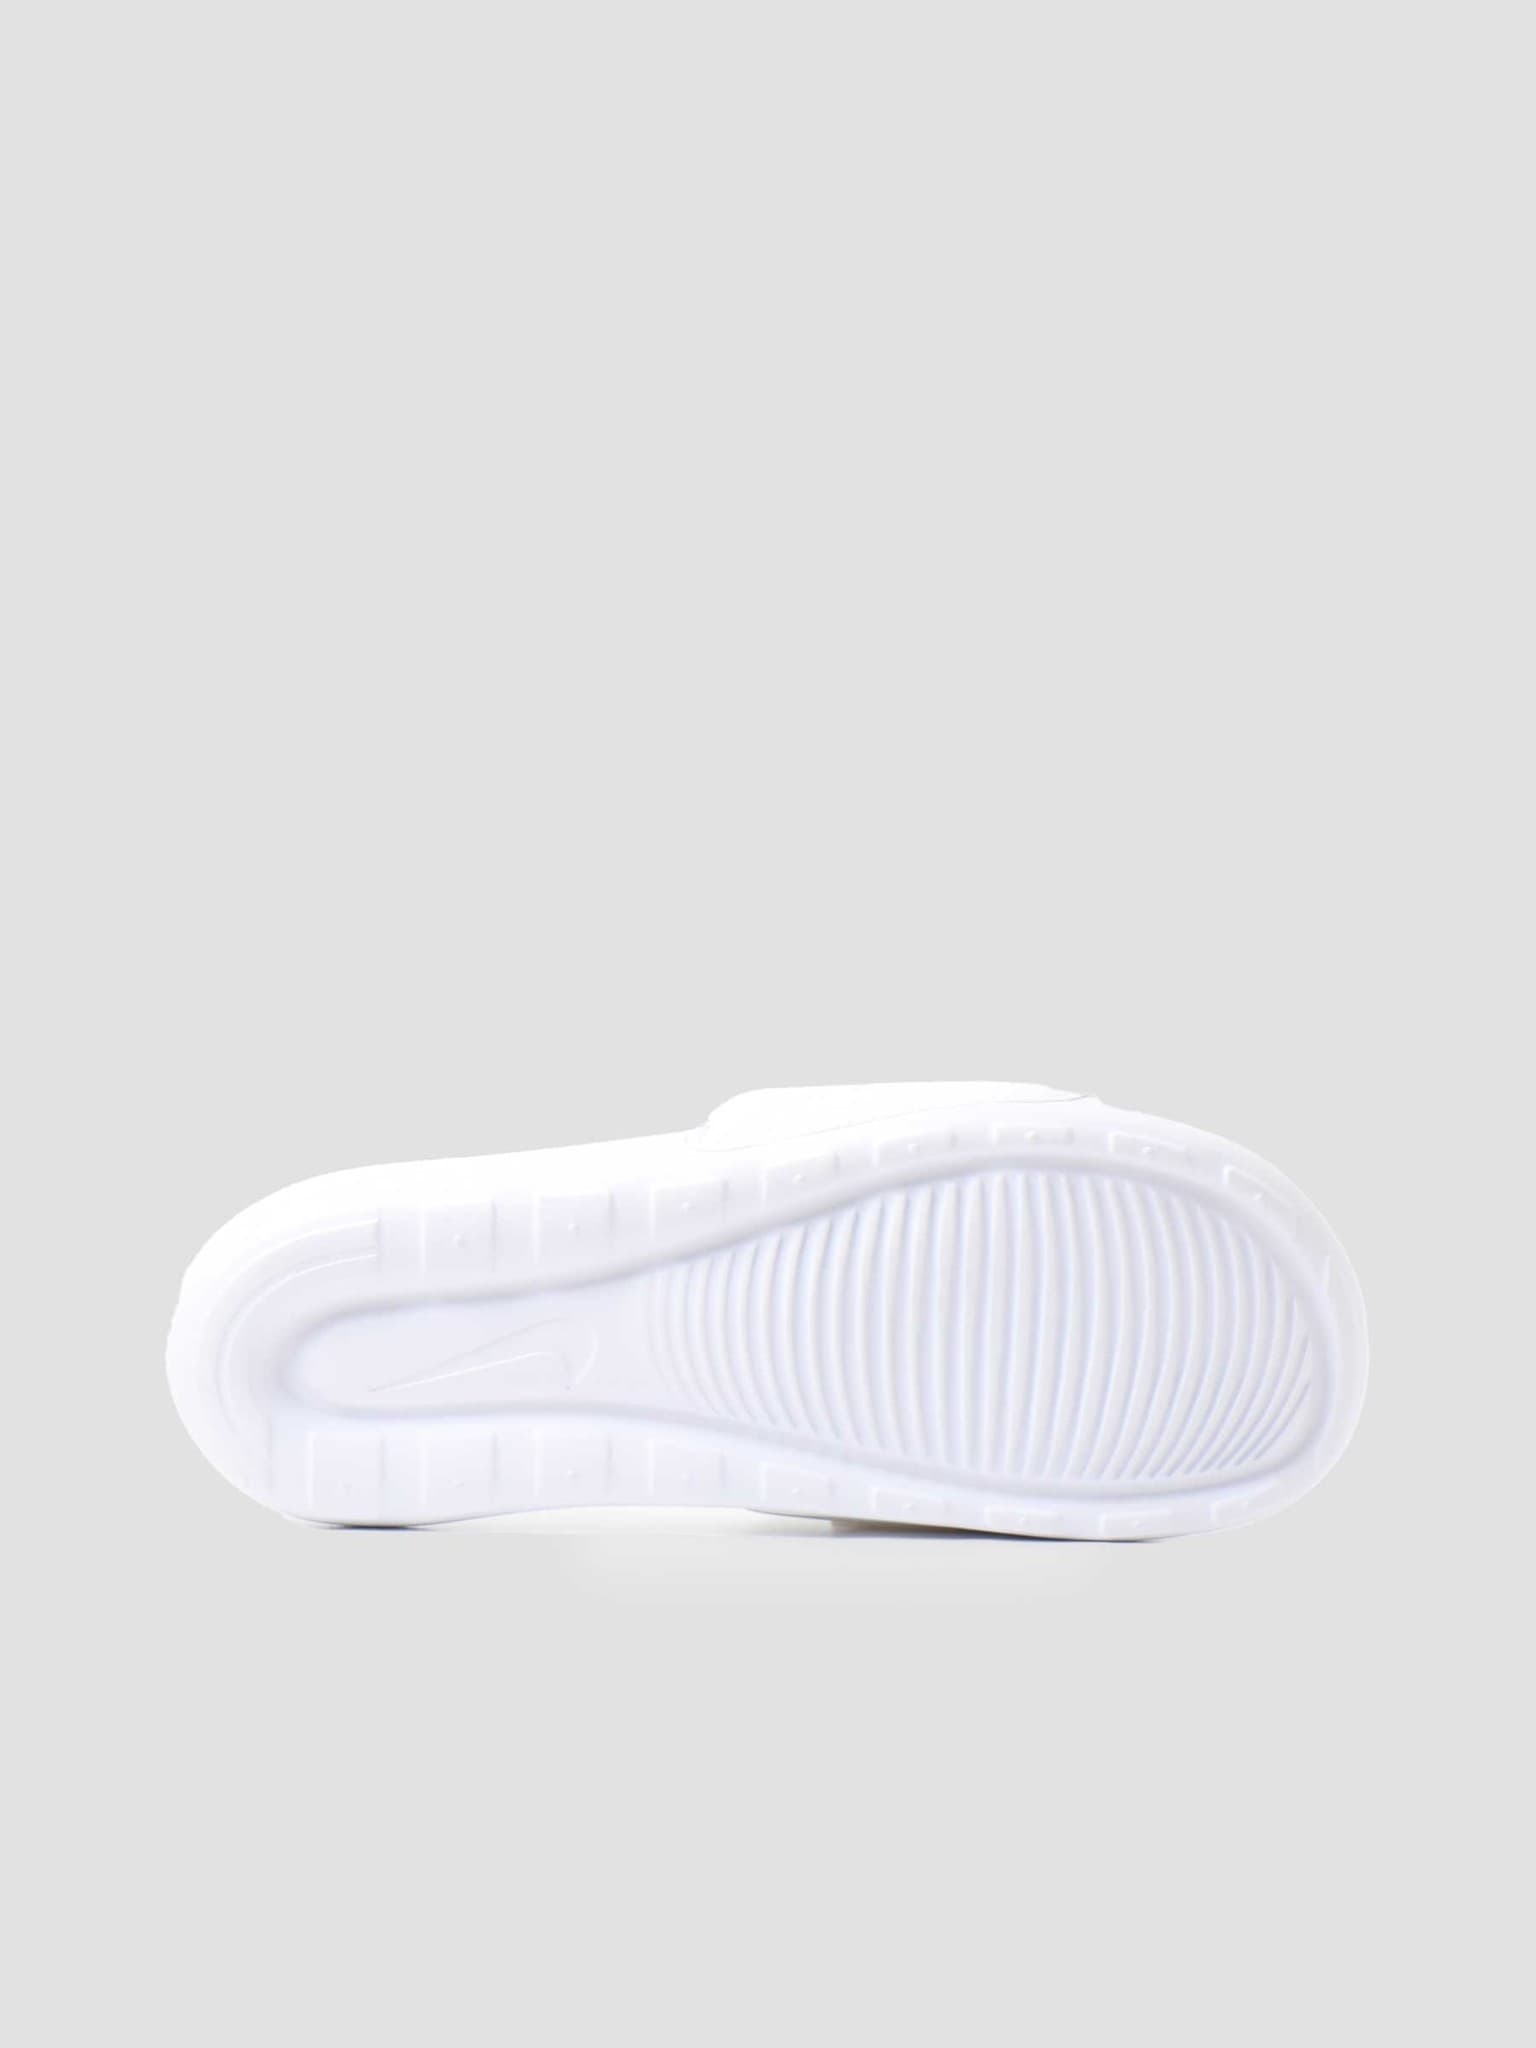 Nike Victori One Slide White Black White CN9675-100